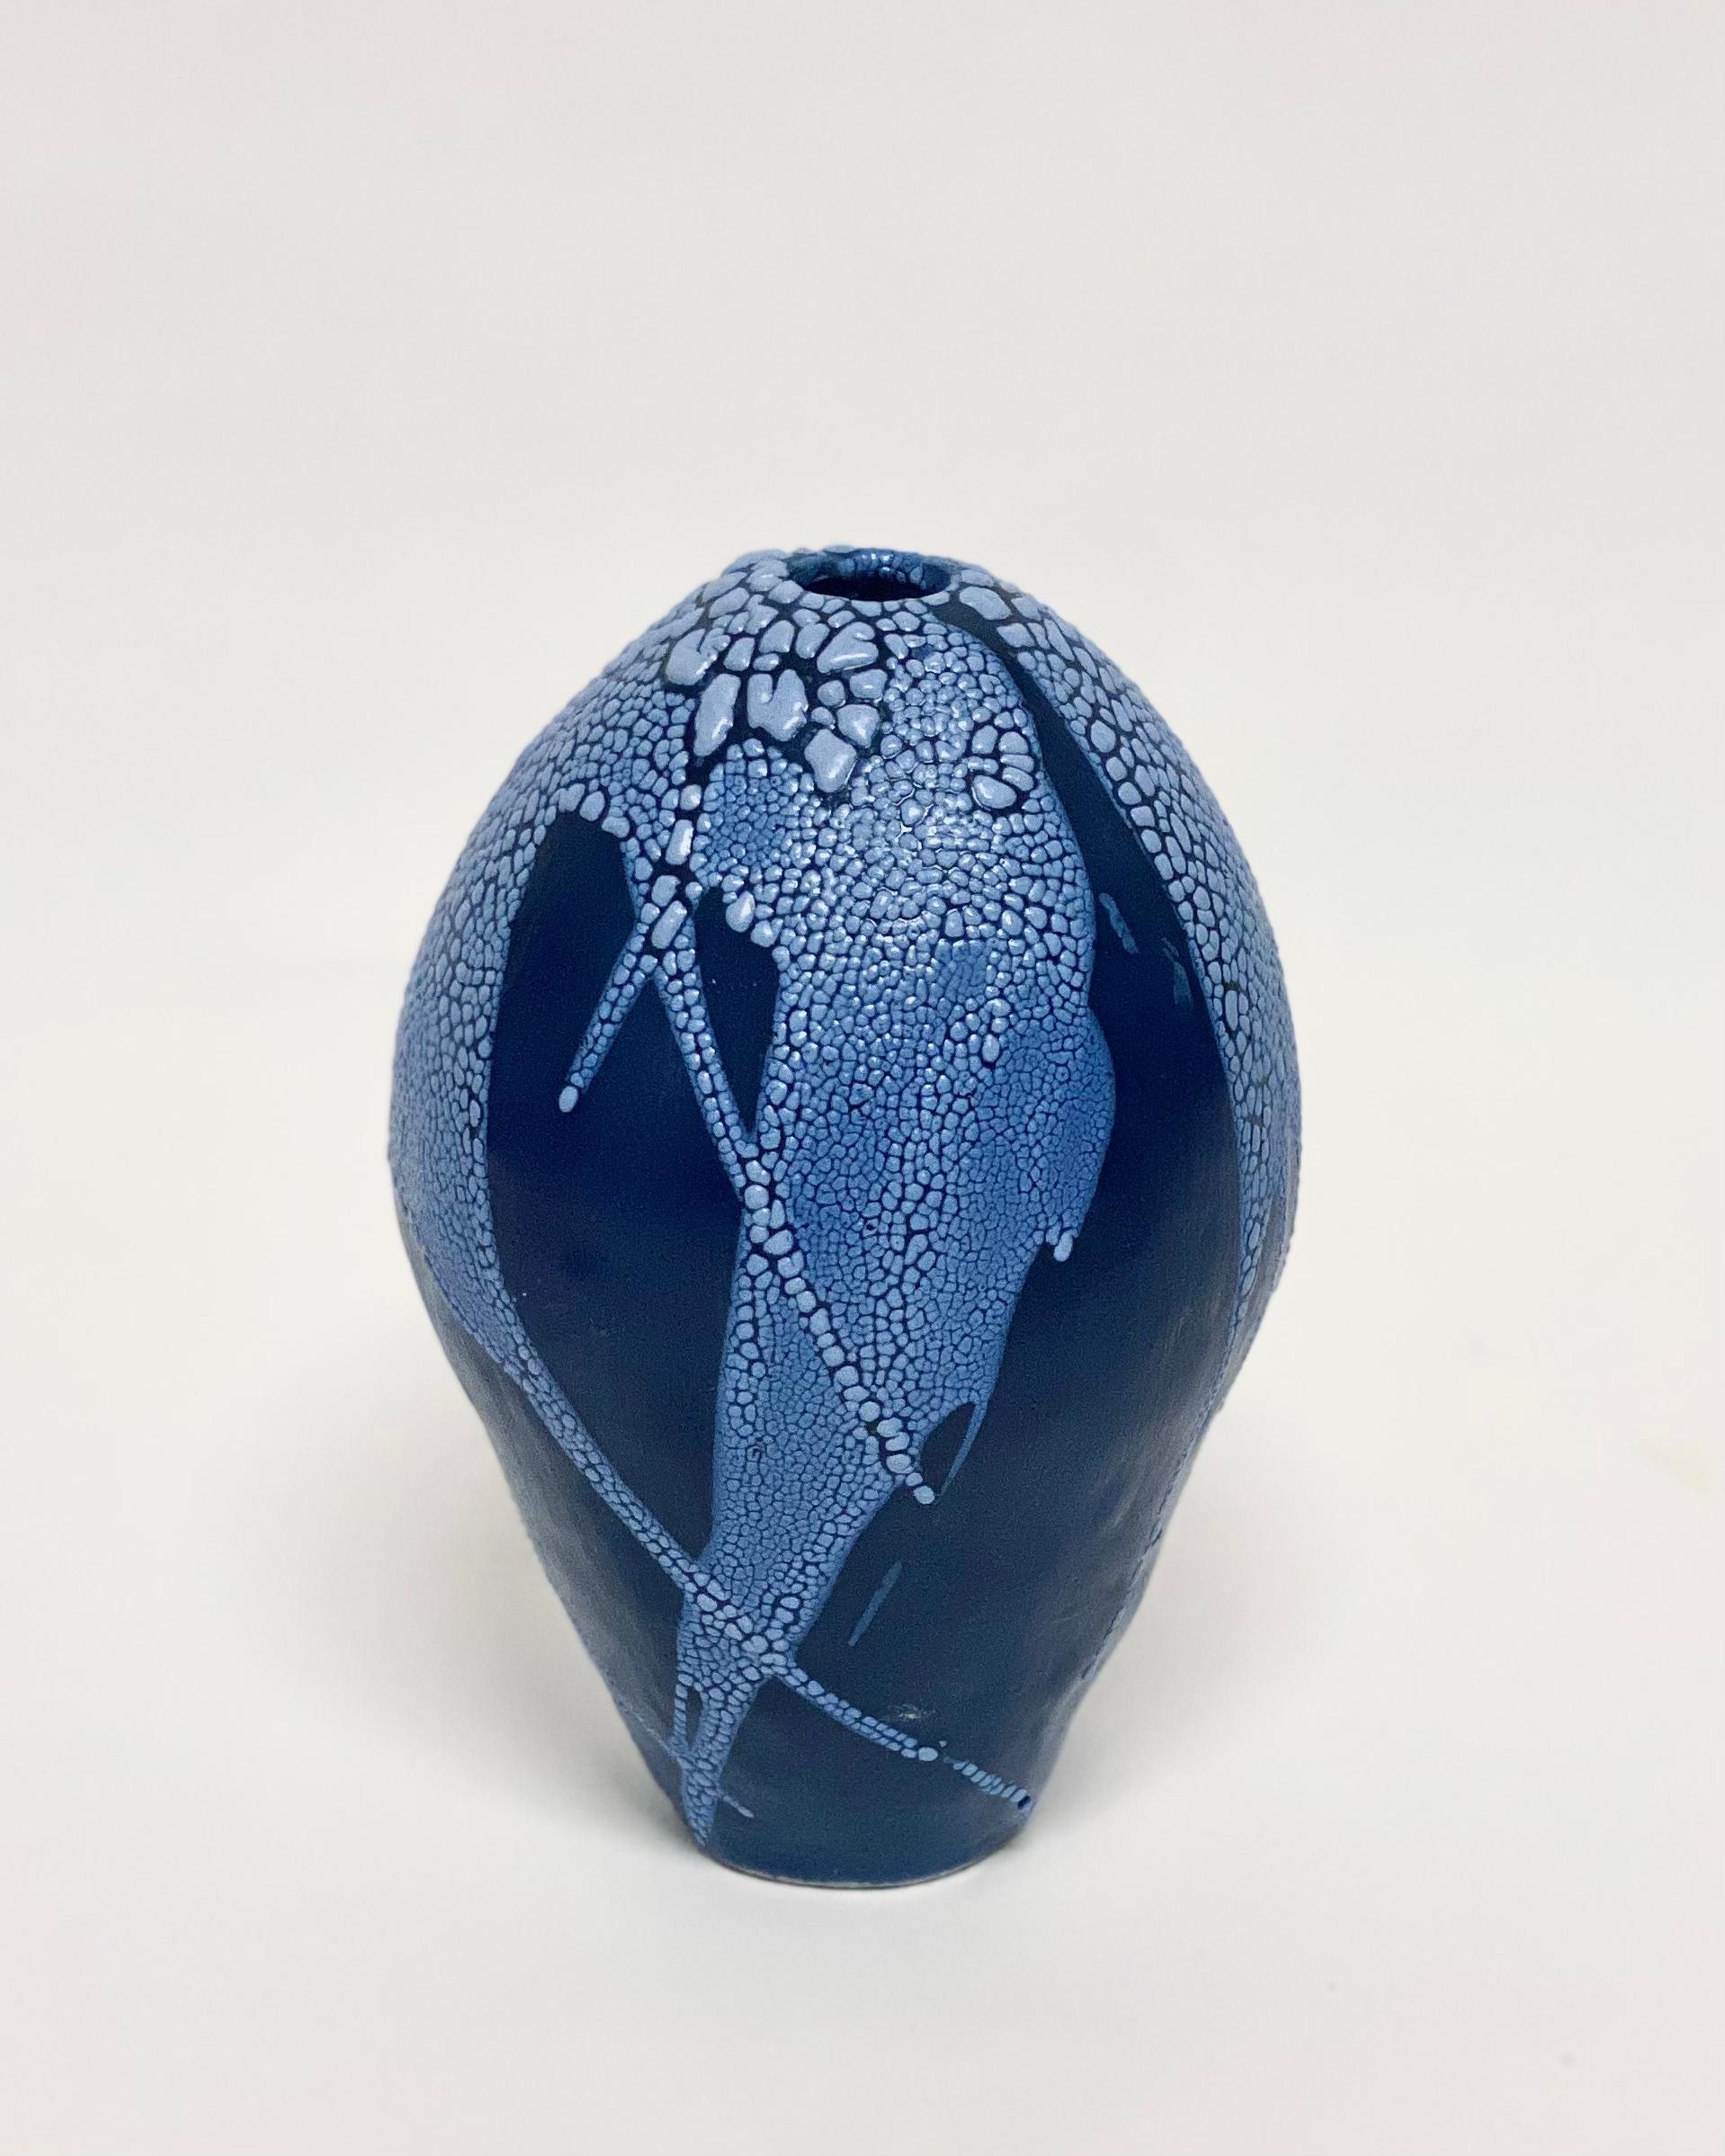 Blau/Blaue Drachenei-Vase von Astrid Öhman
Handgefertigt
Abmessungen: D 16 x H 24 cm
MATERIALIEN: Keramik, Steingut, von Hand modelliert, glasiert und bei hoher Temperatur gebrannt.

Keramiken von Astrid Öhman. Jedes Stück ist handgefertigt und